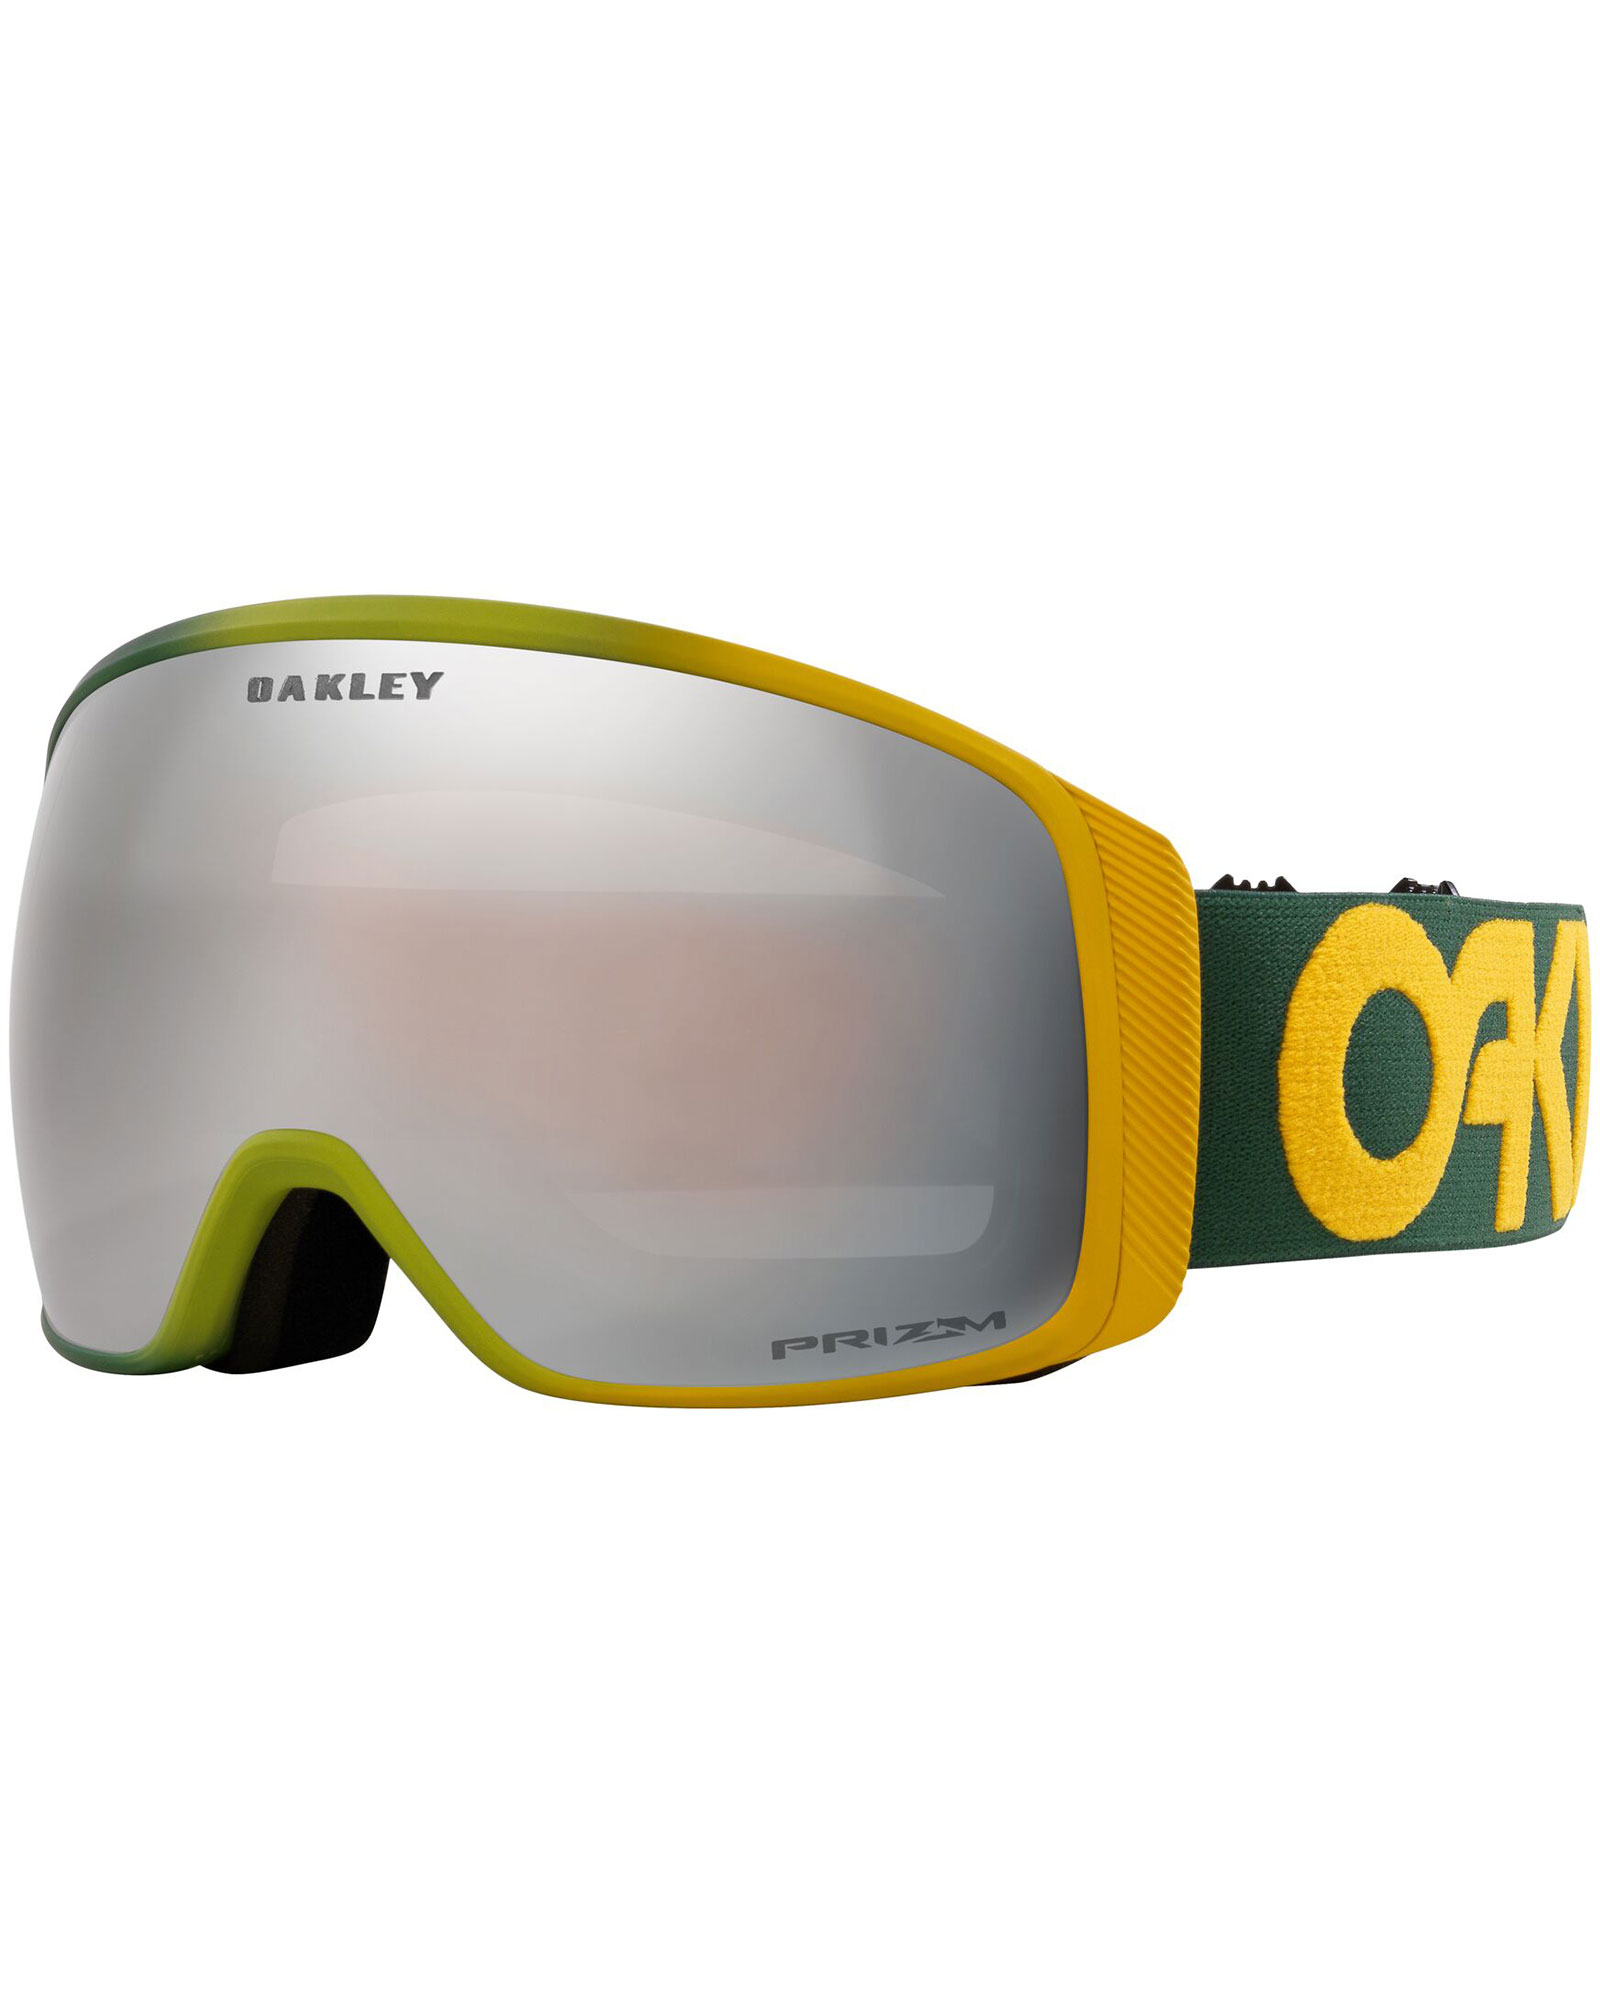 Oakley Flight Tracker L B1B Hunter Gold / Prizm Black Iridium Goggles